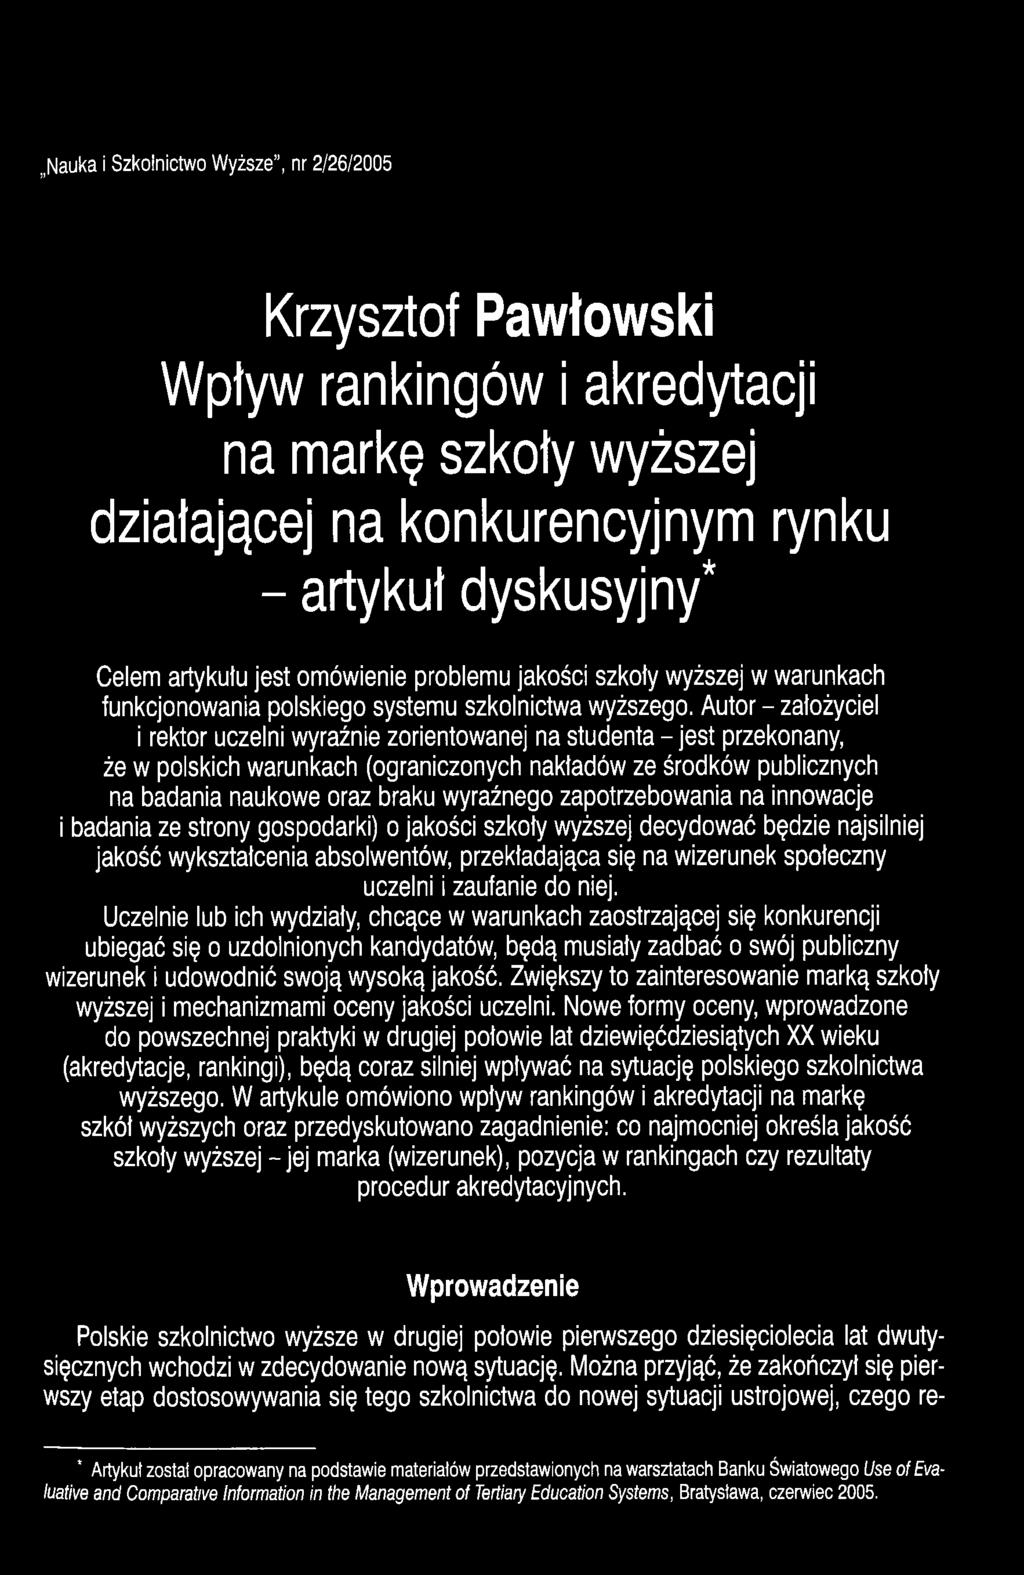 Autor - założyciel i rektor uczelni wyraźnie zorientowanej na studenta - jest przekonany, że w polskich warunkach (ograniczonych nakładów ze środków publicznych na badania naukowe oraz braku